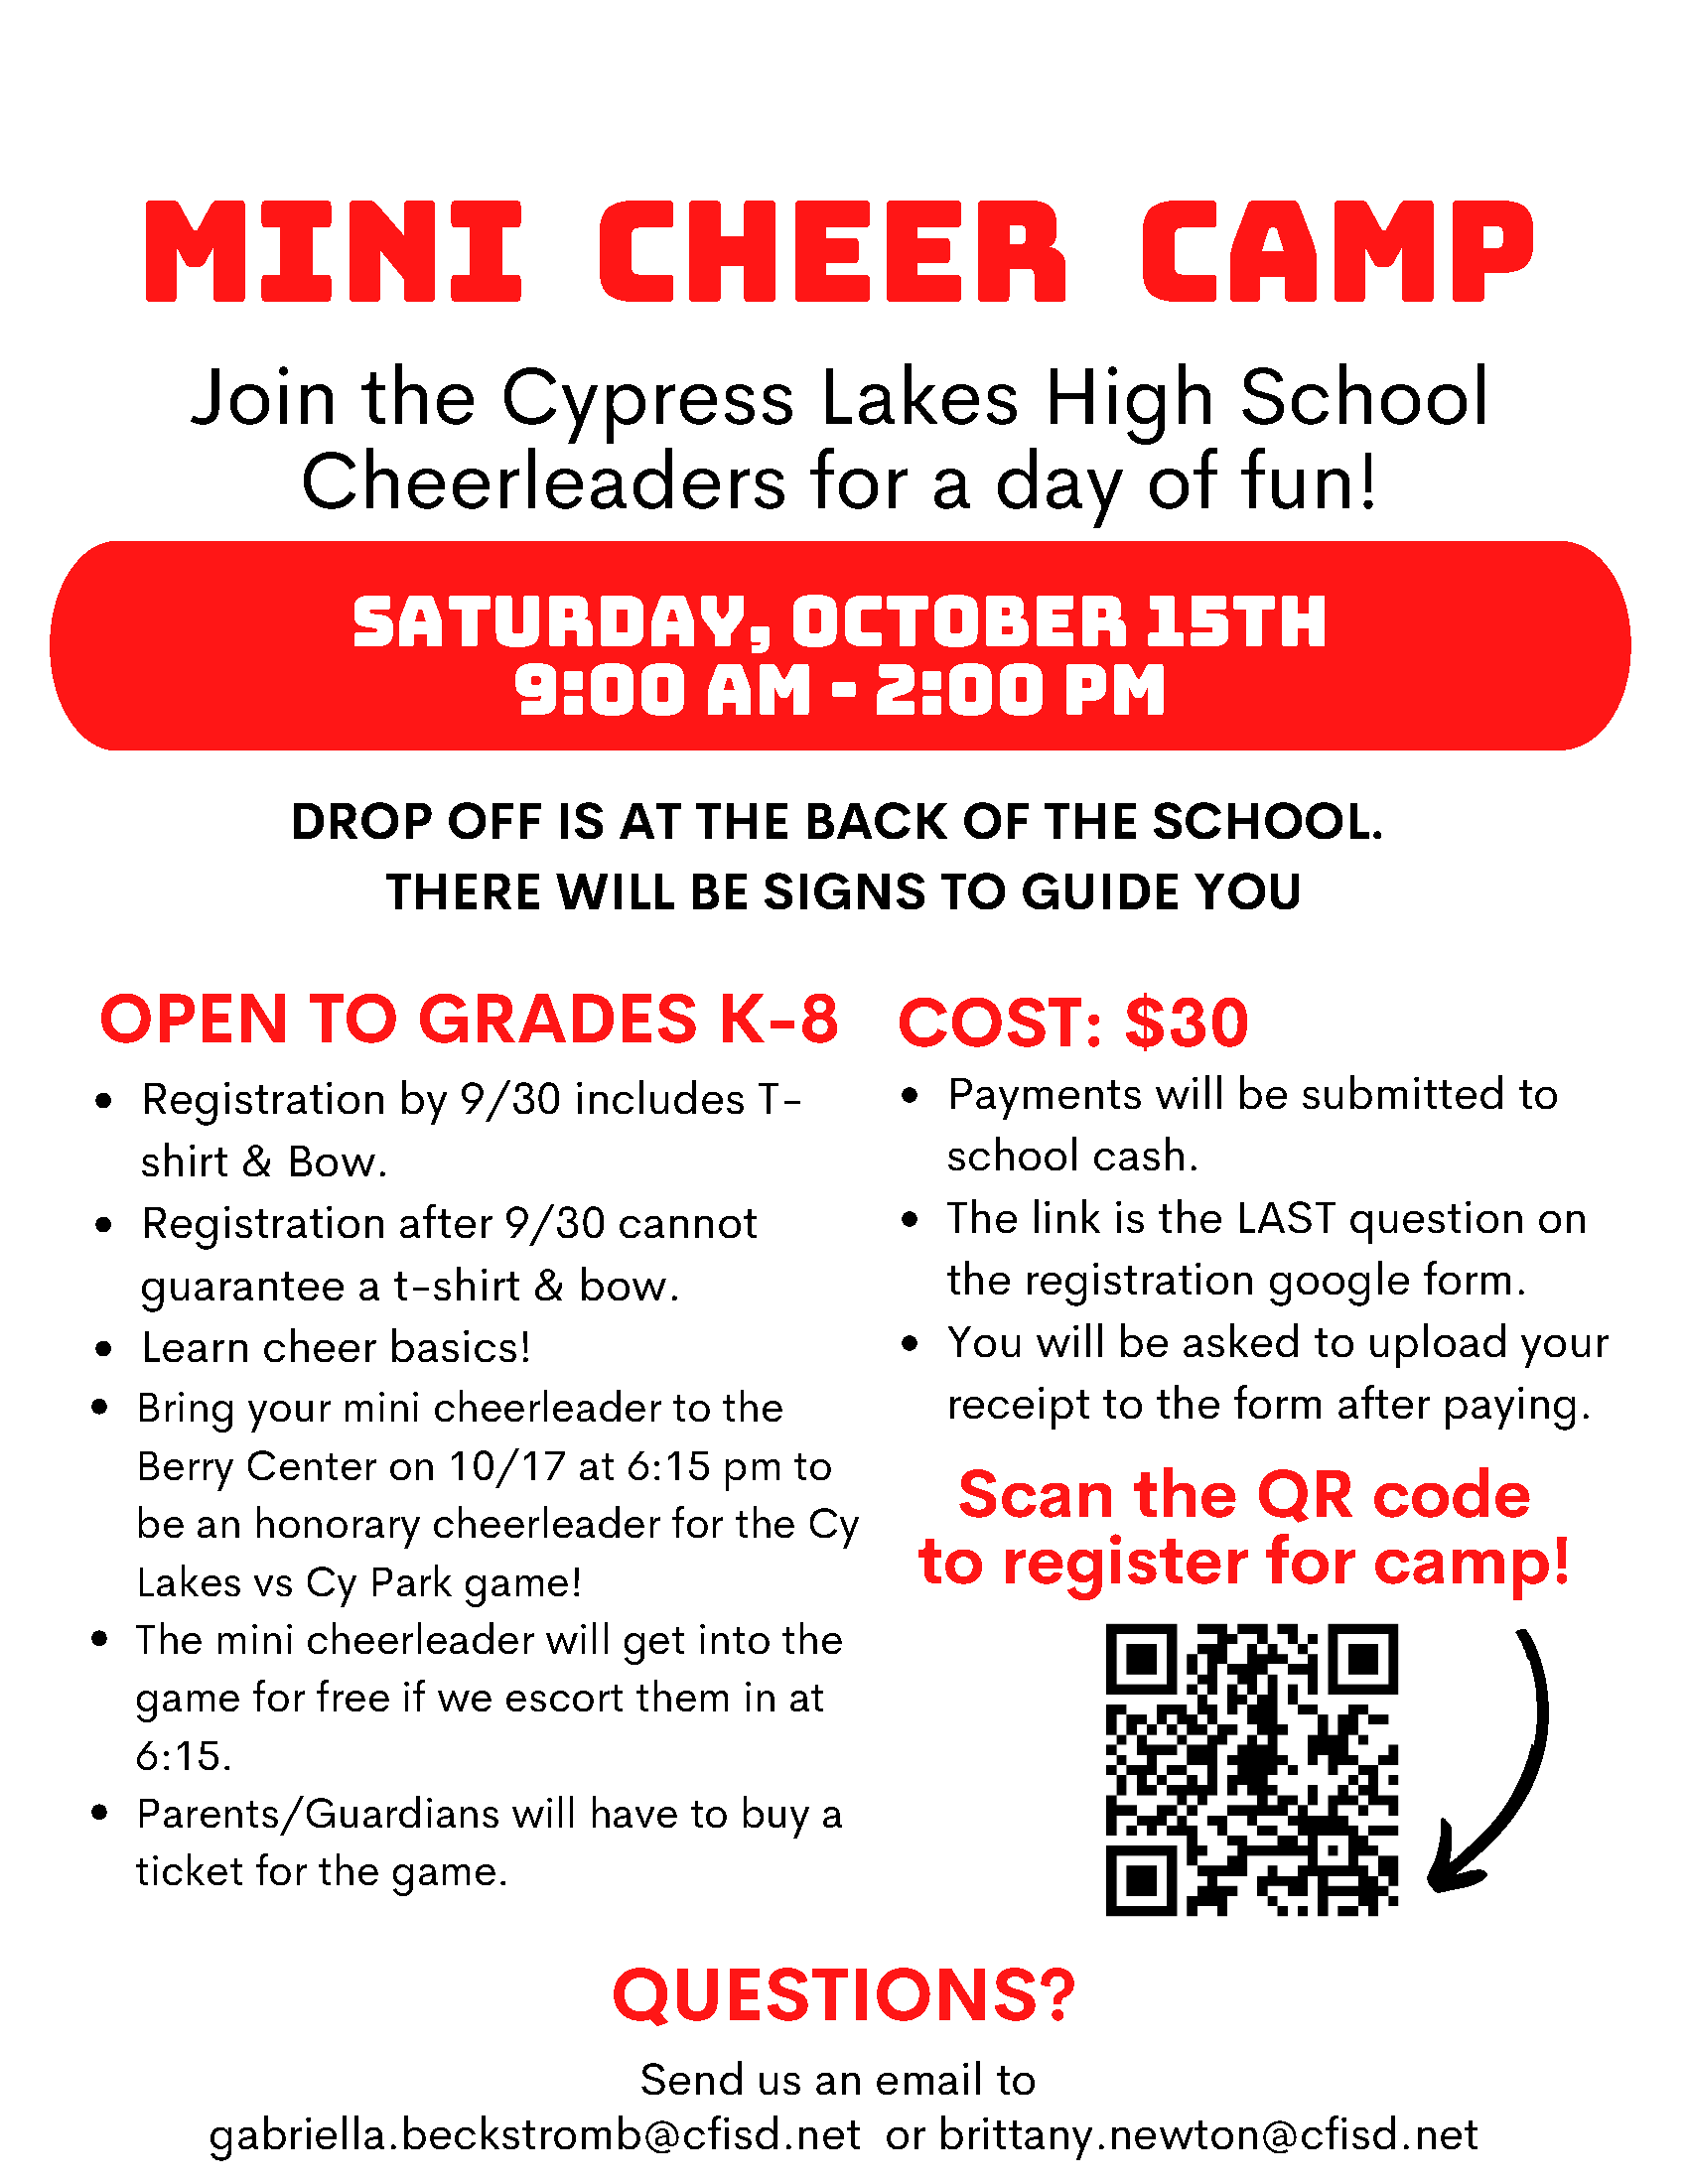 Mini Cheer Camp at Cy Lakes HS - 10/15/22 9am-2pm, Grades K-8, Cost $30